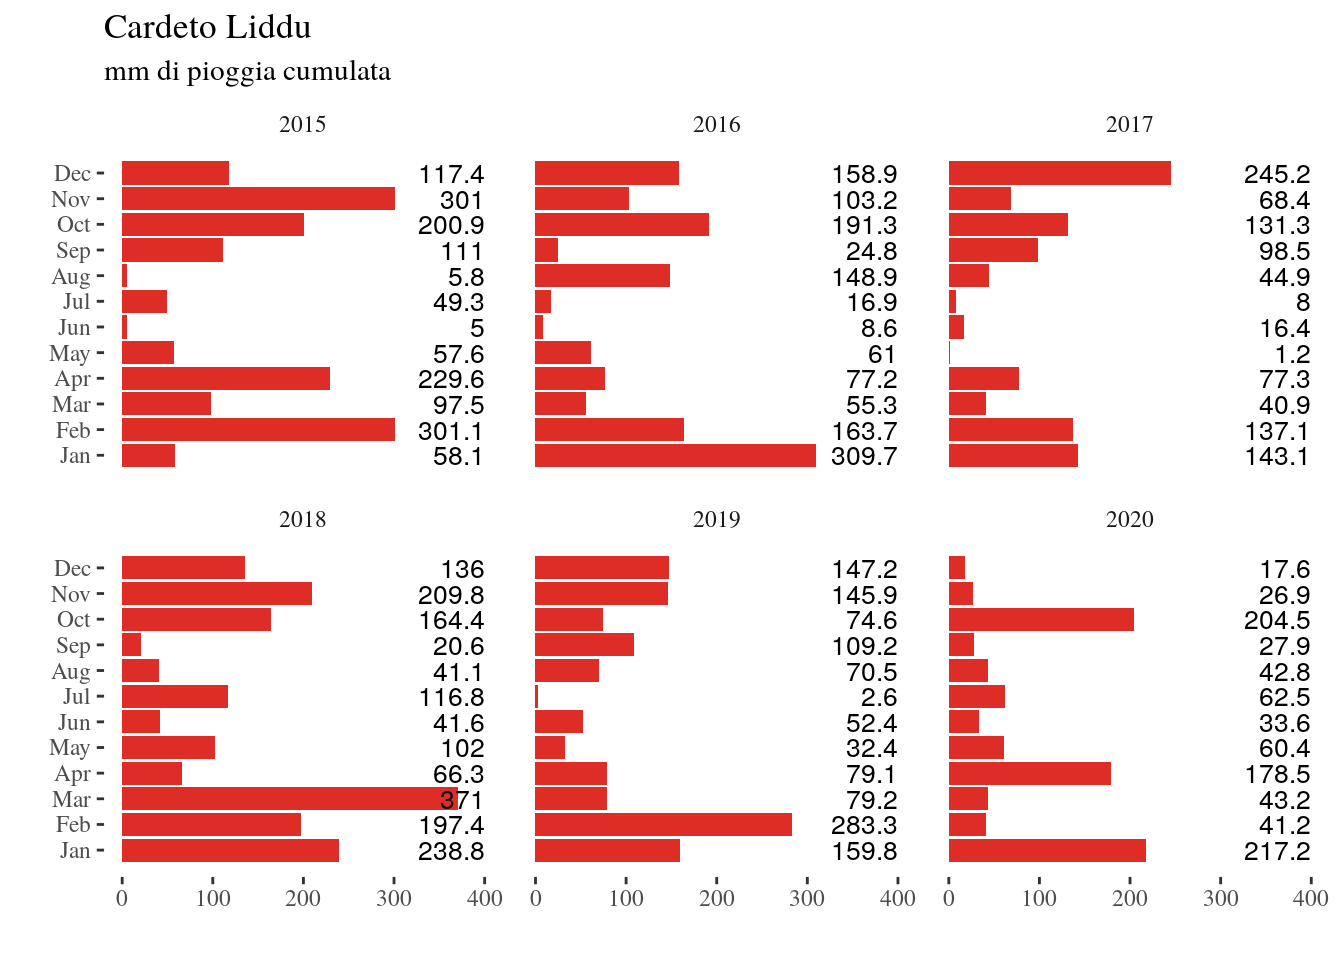 mm di pioggia Cardeto-Liddu per gli anni 2015-2020